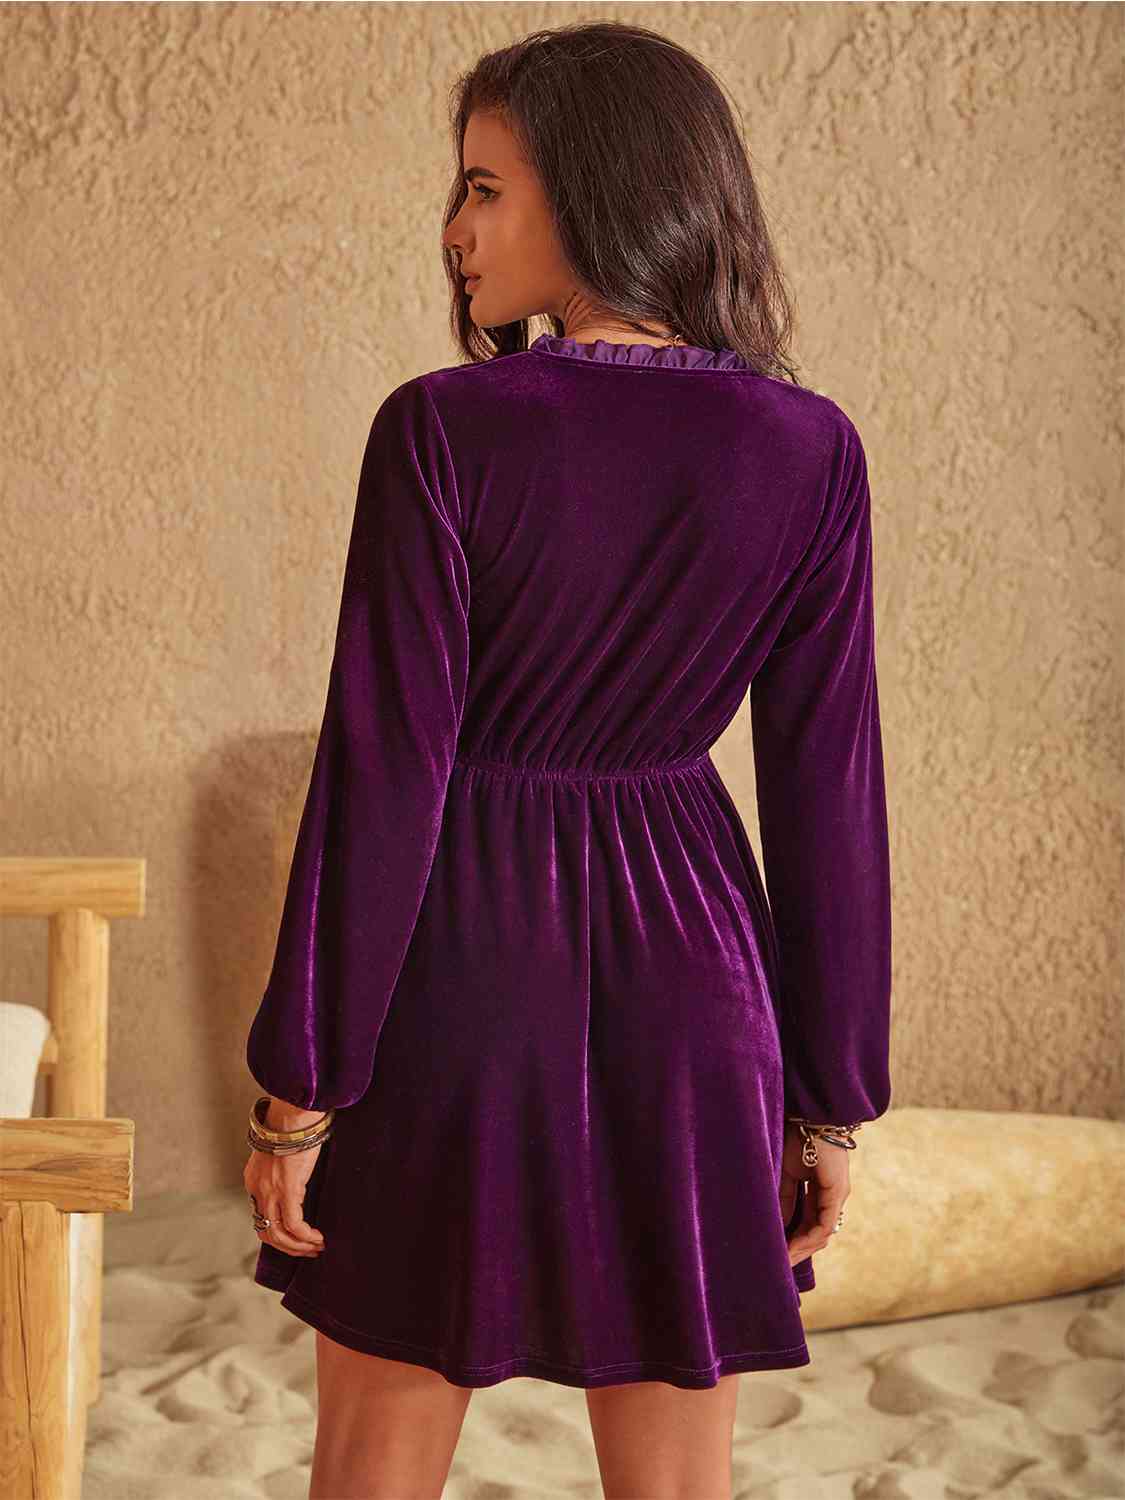 Ruffled V-Neck Long Sleeve Velvet Mini Dress in PlumMini DressBeach Rose Co.